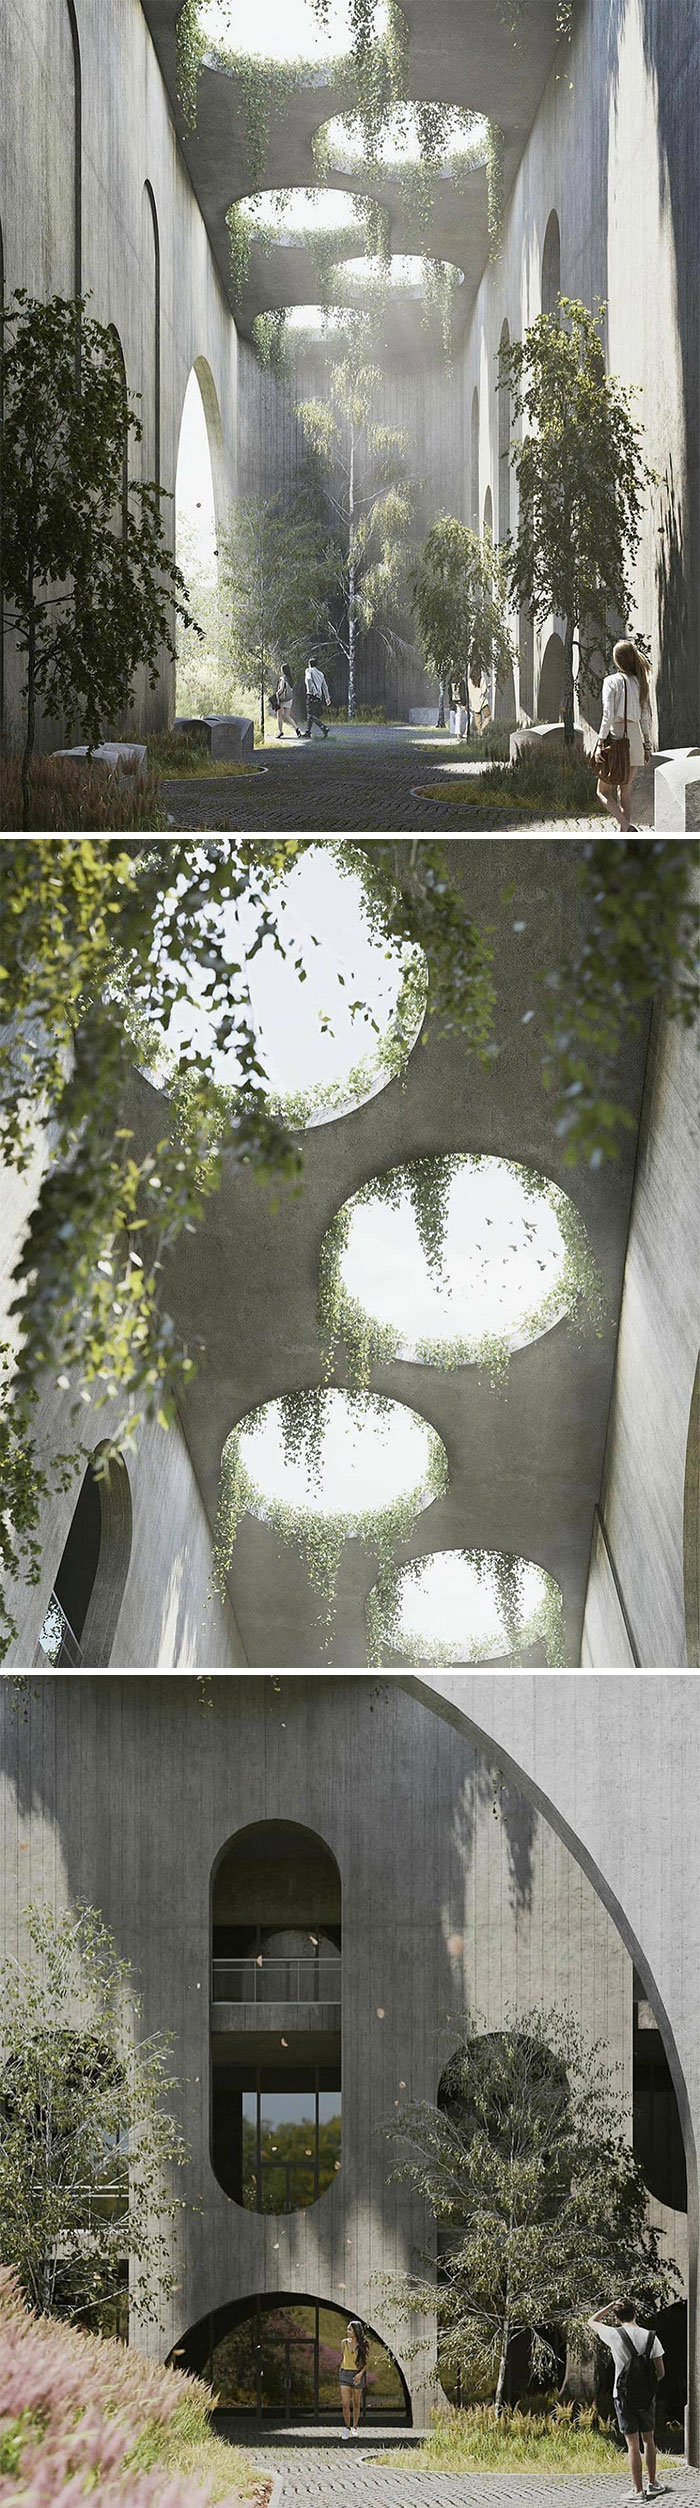 Concrete Jungle By Victoria Chuchupalova